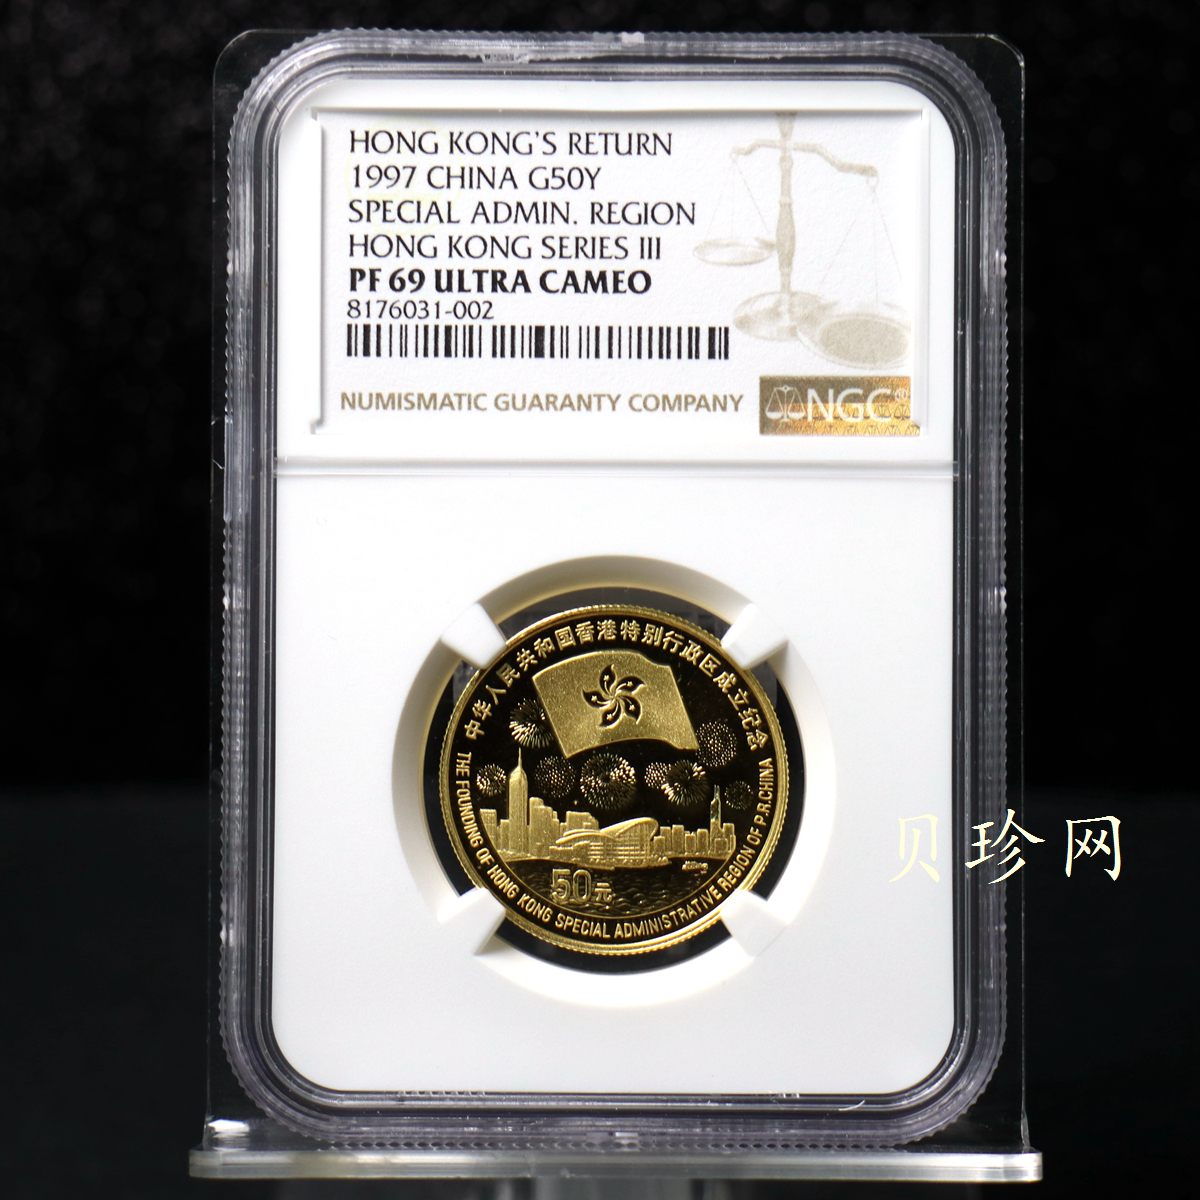 【970902】1997年香港回归祖国金银纪念币（第3组）-香港1/2盎司精制金币